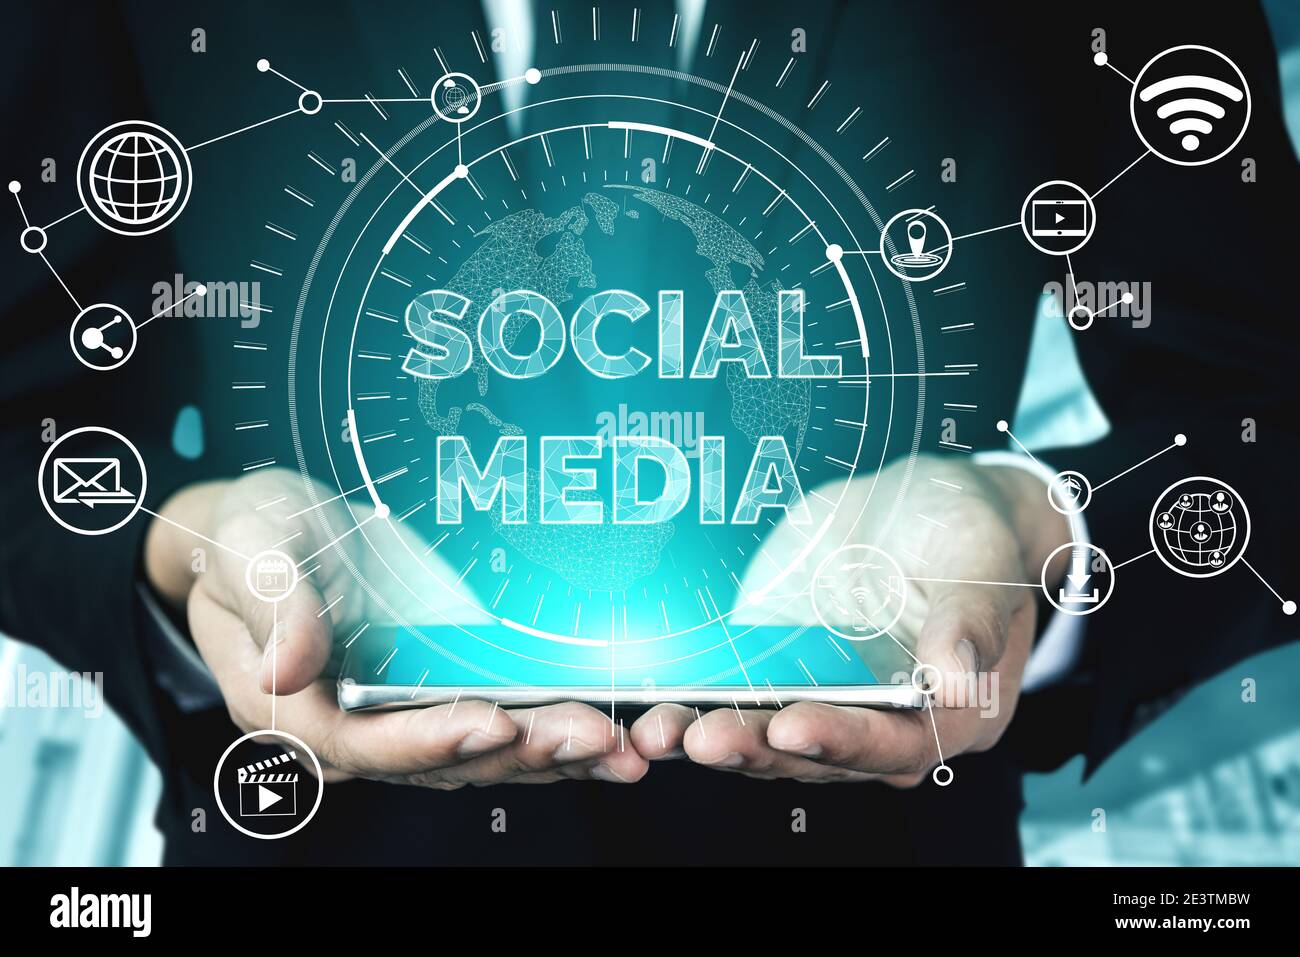 Les médias sociaux et les jeunes concept de réseau. L'interface graphique moderne en ligne montrant la connexion sociale et médias réseau satellite pour engager le client Banque D'Images